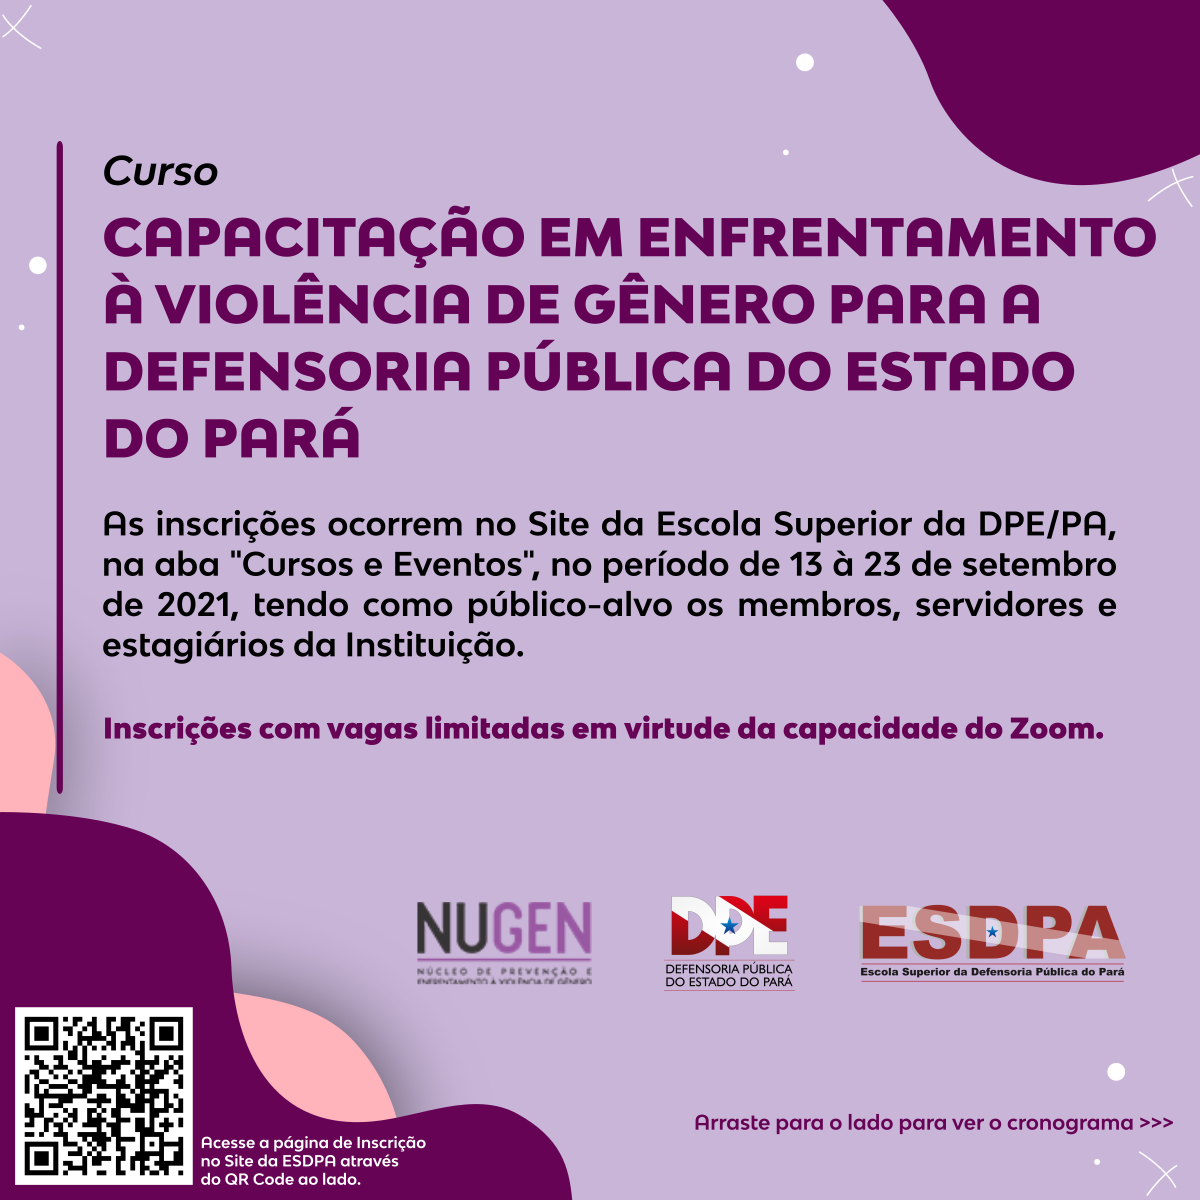 ESDPA e NUGEN promovem Capacitação em Enfrentamento à Violência de Gênero para a Defensoria Pública do Estado do Pará